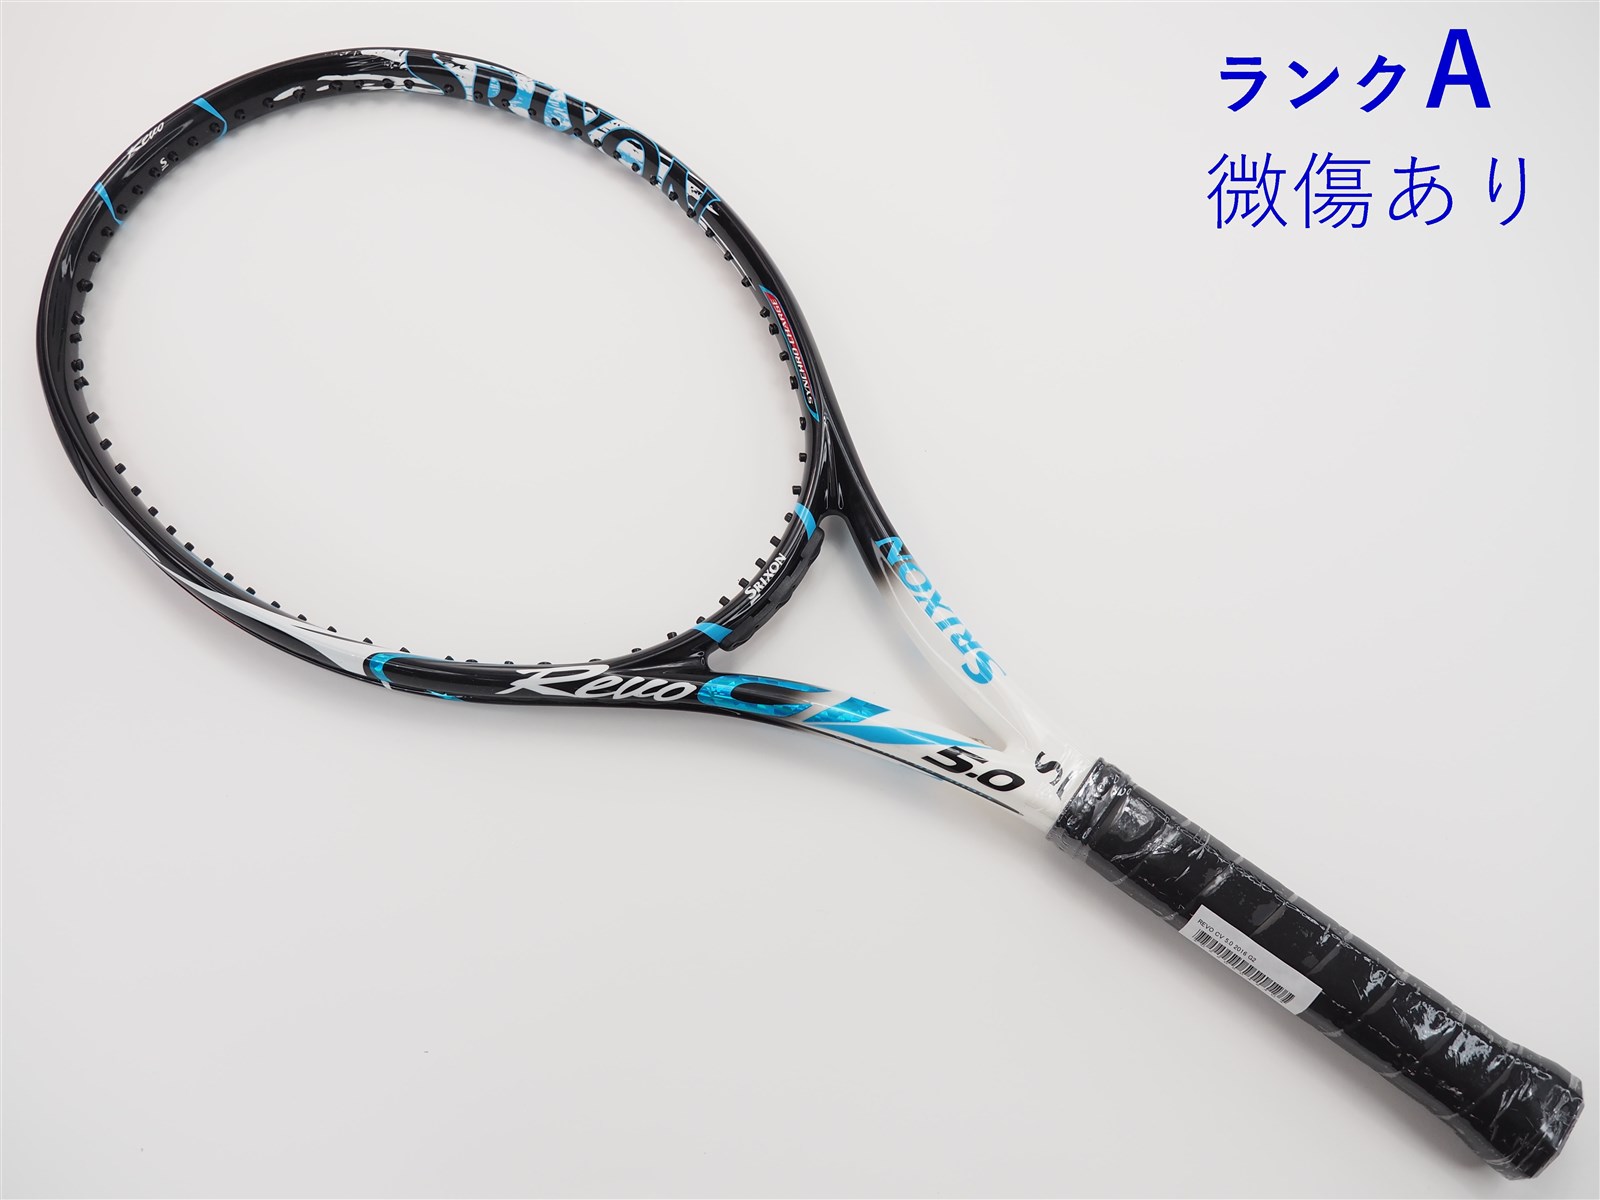 270インチフレーム厚テニスラケット スリクソン レヴォ CV 5.0 2016年モデル (G1)SRIXON REVO CV 5.0 2016